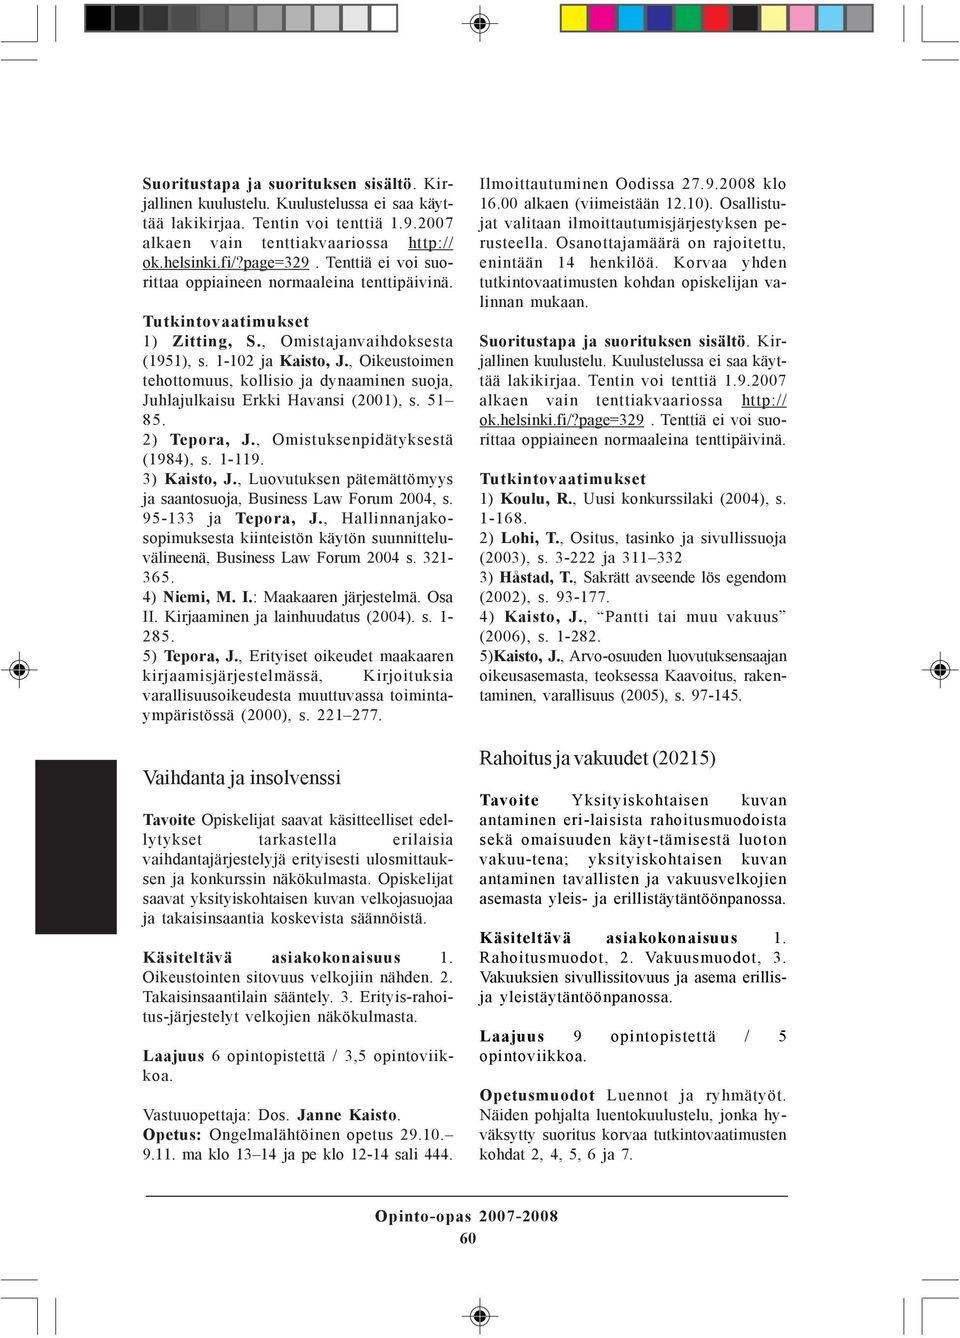 , Oikeustoimen tehottomuus, kollisio ja dynaaminen suoja, Juhlajulkaisu Erkki Havansi (2001), s. 51 85. 2) Tepora, J., Omistuksenpidätyksestä (1984), s. 1-119. 3) Kaisto, J.